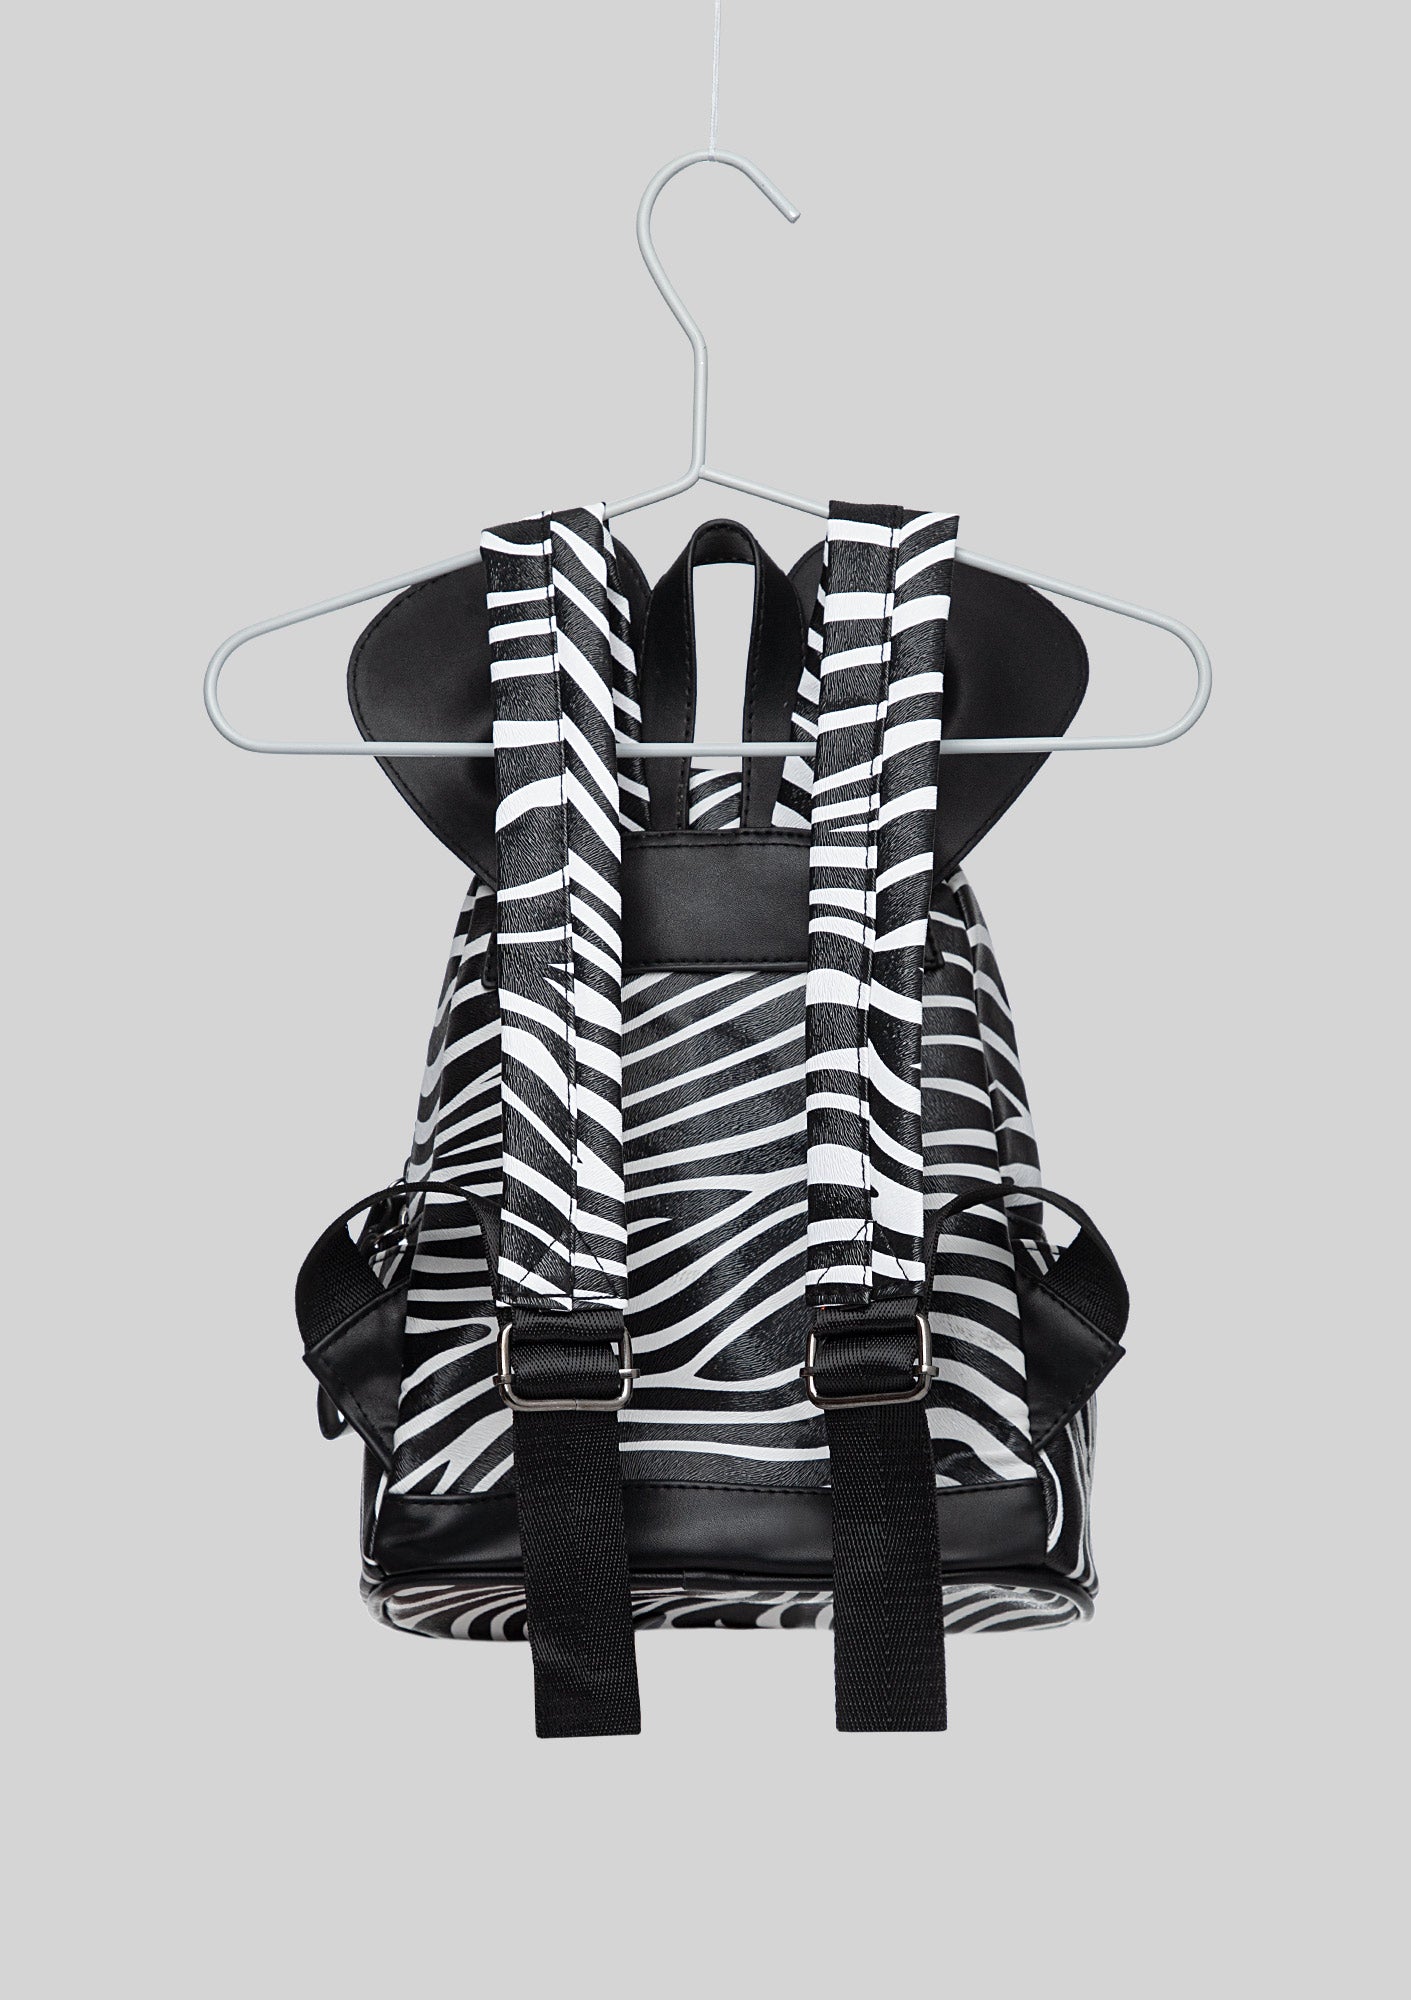 Studded Zebra Backpack